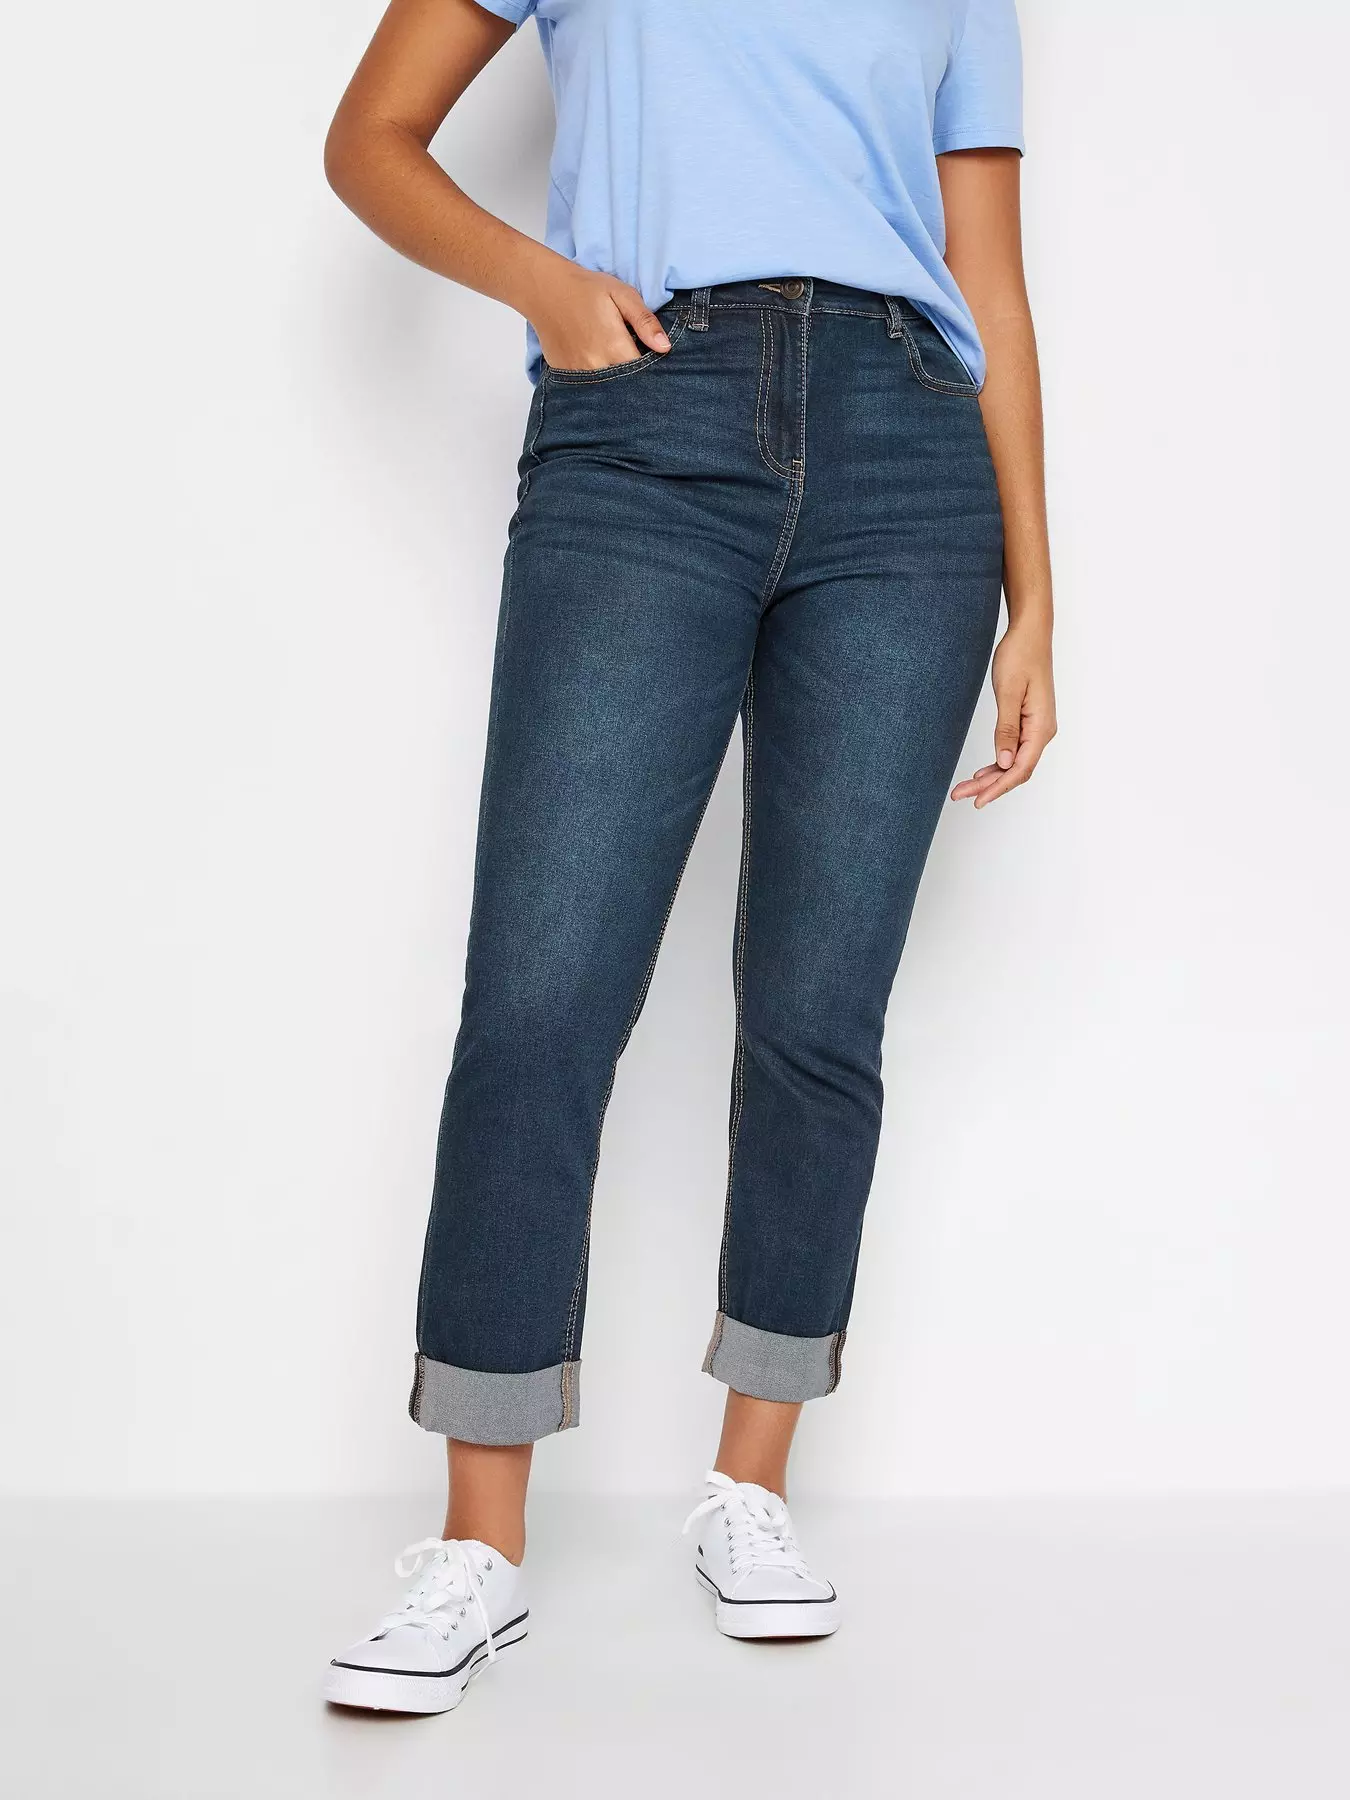 Petite Jeans Inseam 29  - 73.5 cm